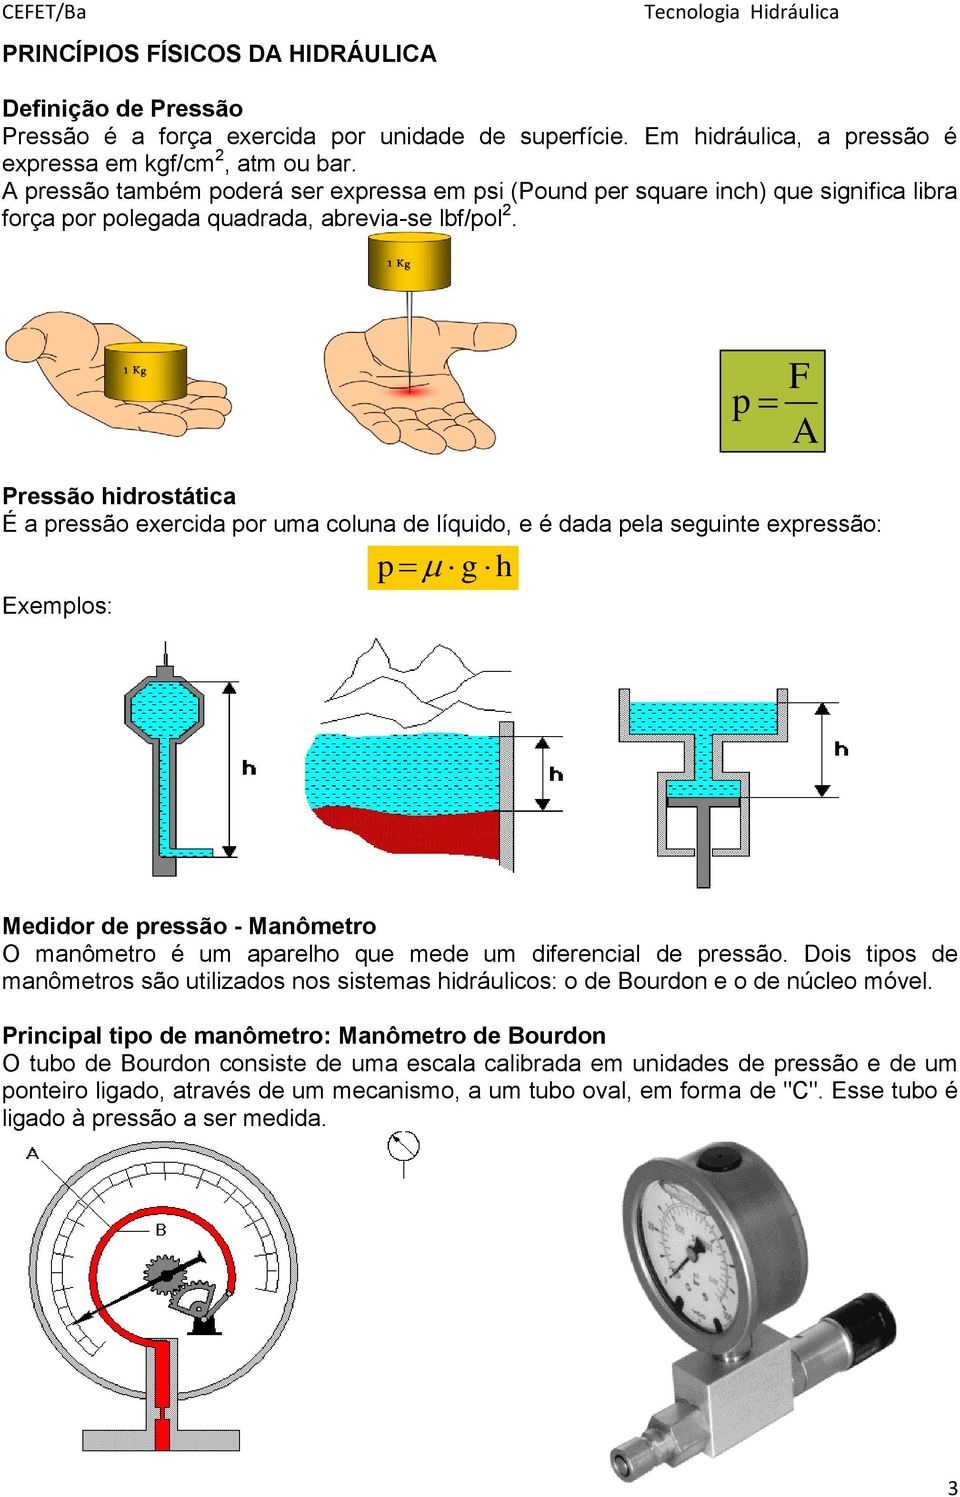 Pressão hidrostática É a pressão exercida por uma coluna de líquido, e é dada pela seguinte expressão: Exemplos: p g h p F A Medidor de pressão - Manômetro O manômetro é um aparelho que mede um